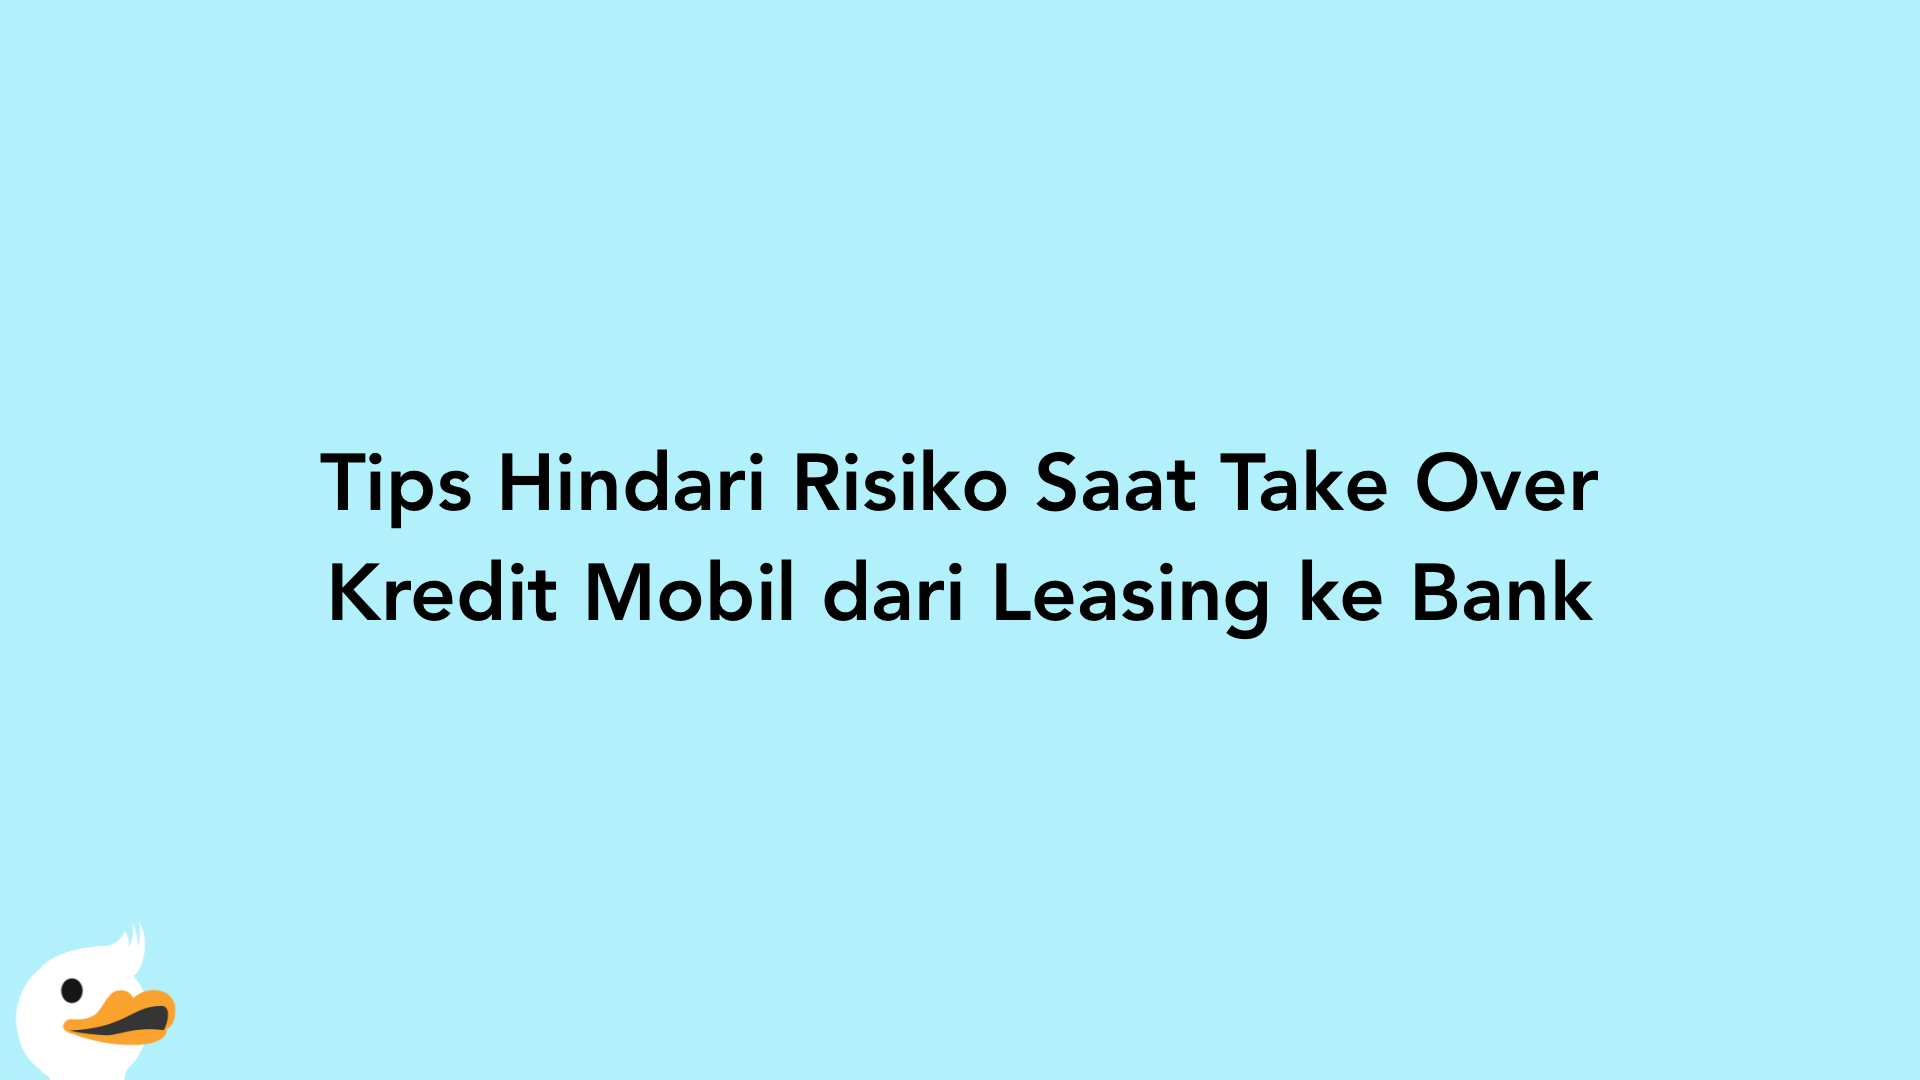 Tips Hindari Risiko Saat Take Over Kredit Mobil dari Leasing ke Bank